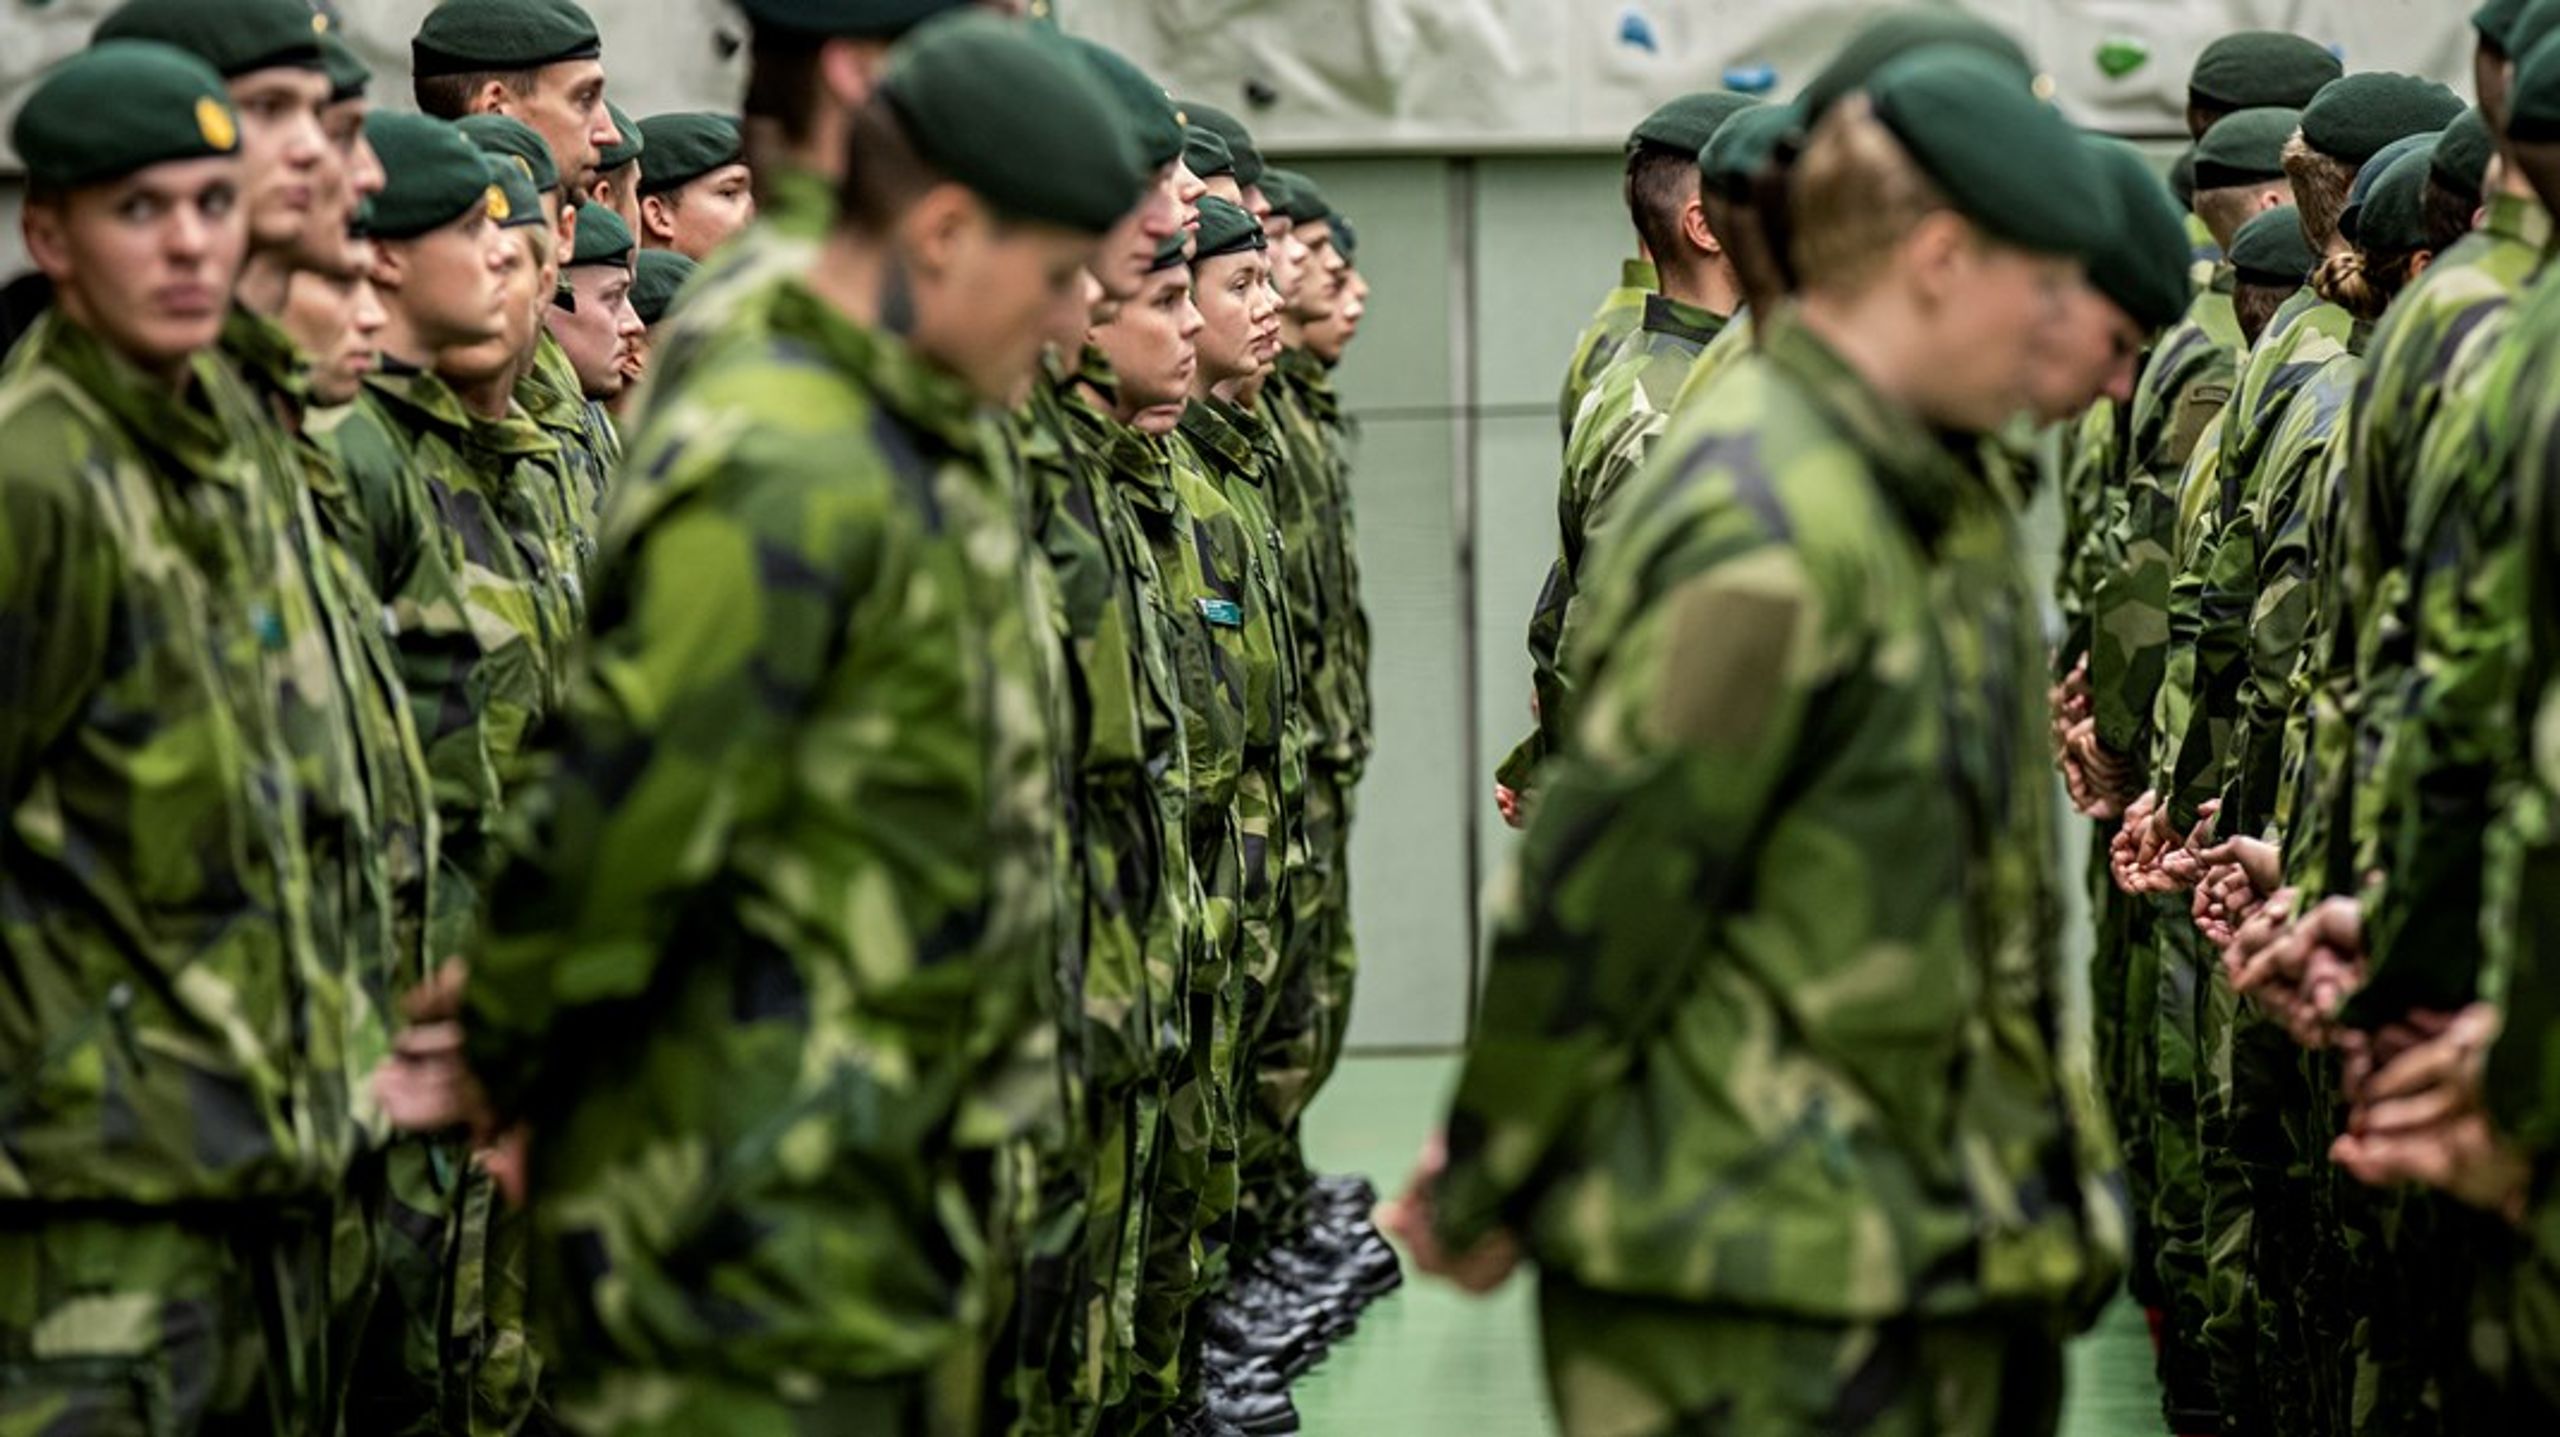 Inte bara Försvarsmakten växer, utan även försvarsmyndigheterna. Bild från återinvigningen av Norrlands dragonregemente K4 i Arvidsjaur.